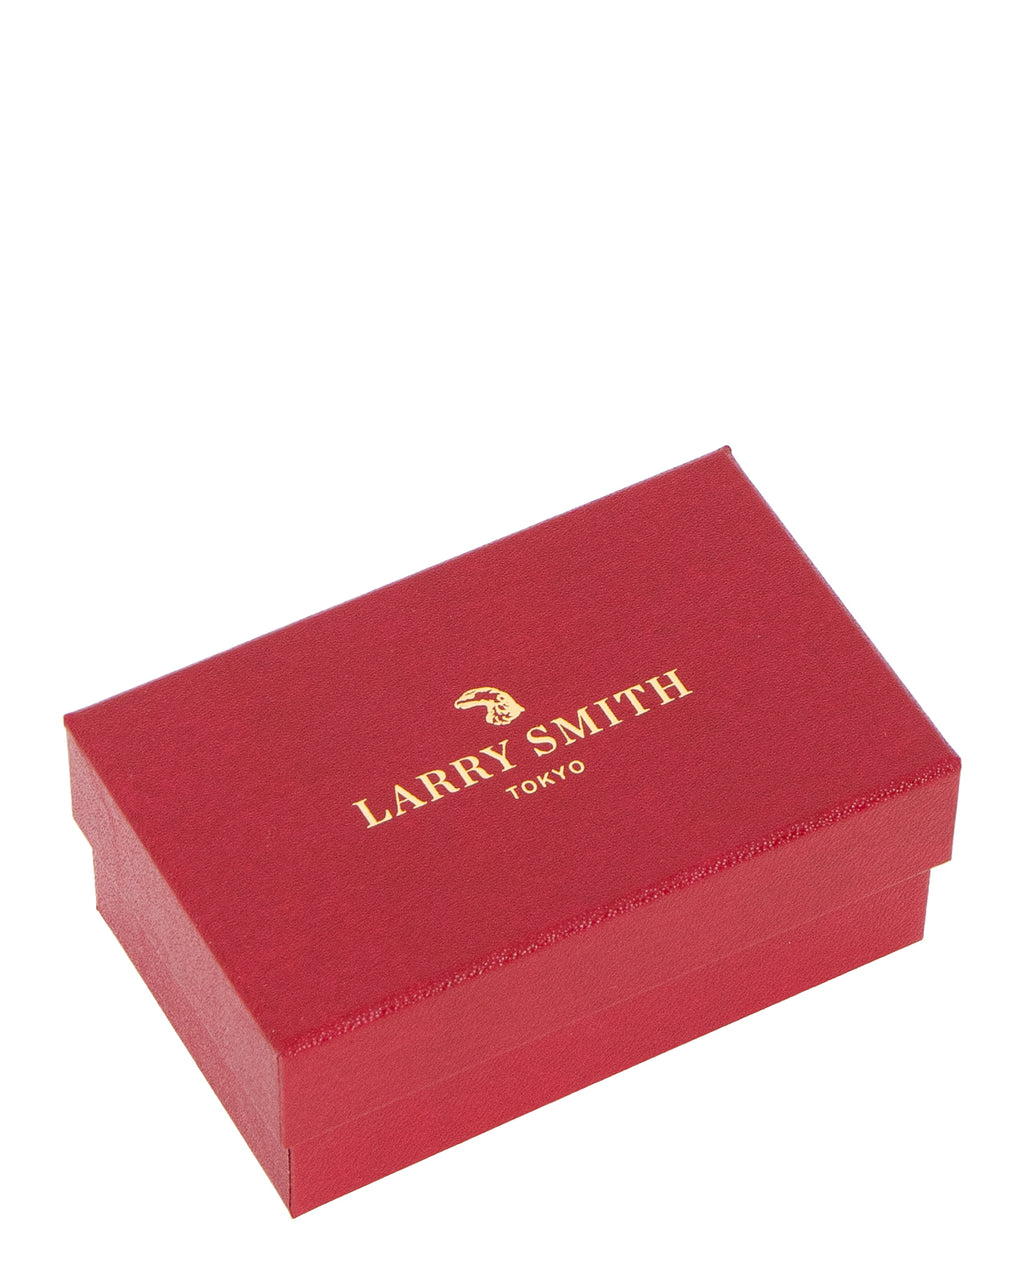 Larry Smith Kazekiri Feather Leather Necklace